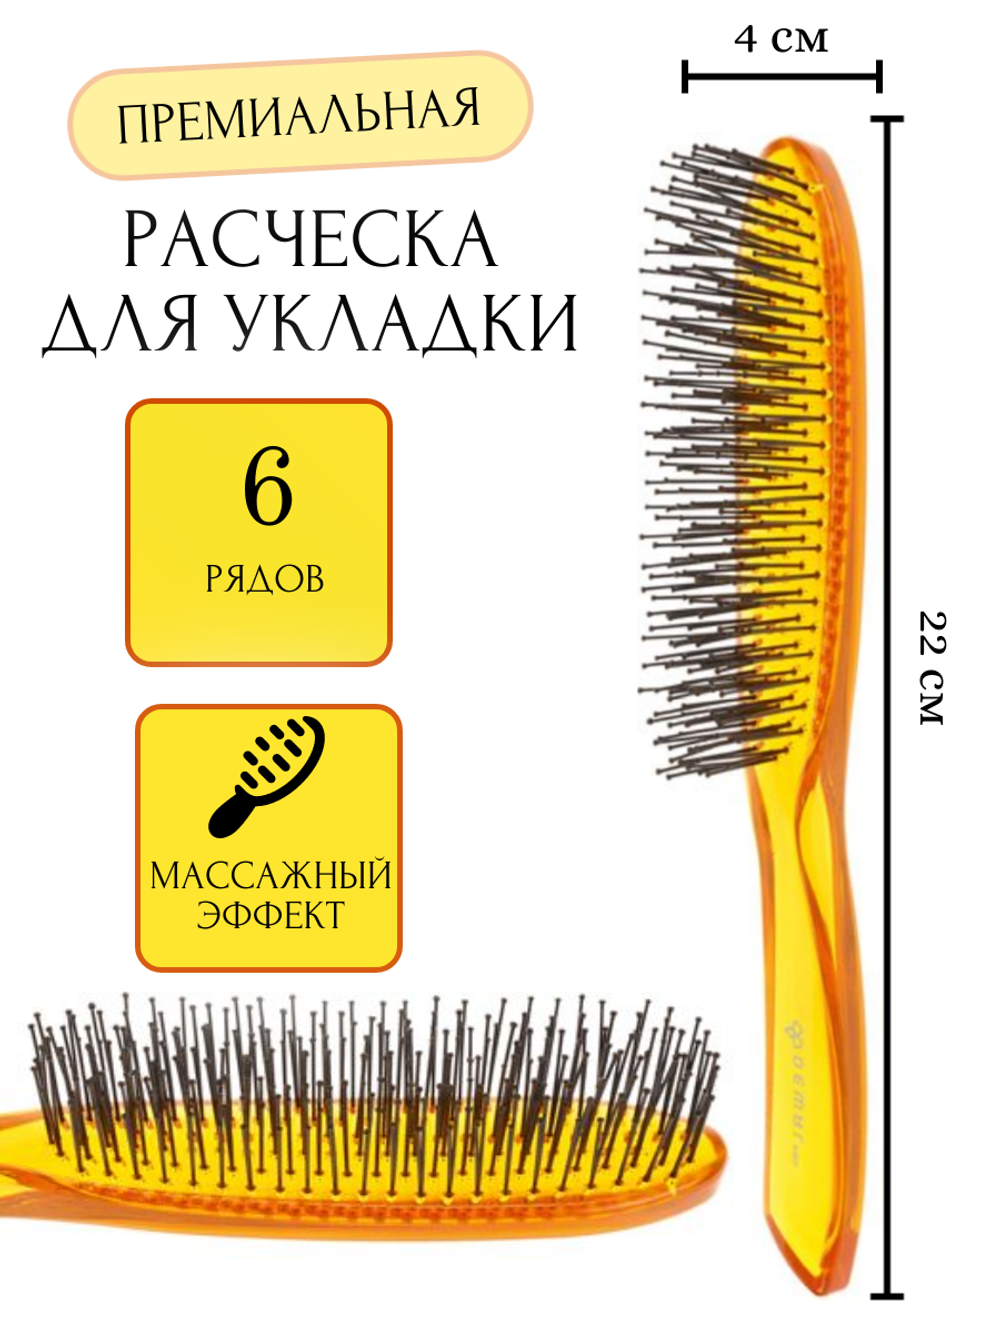 Щетка для расчесывания сухих и влажных волос